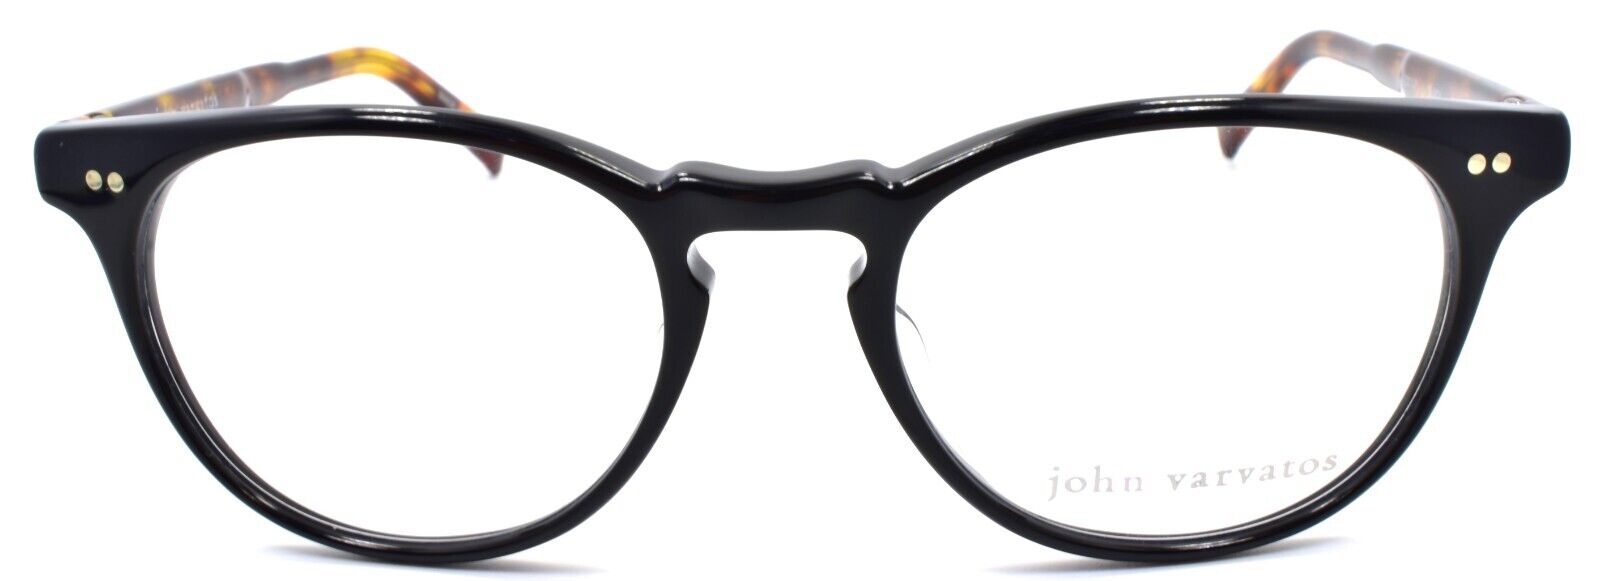 2-John Varvatos V200 UF Men's Eyeglasses Frames 51-19-145 Black Japan-751286274158-IKSpecs